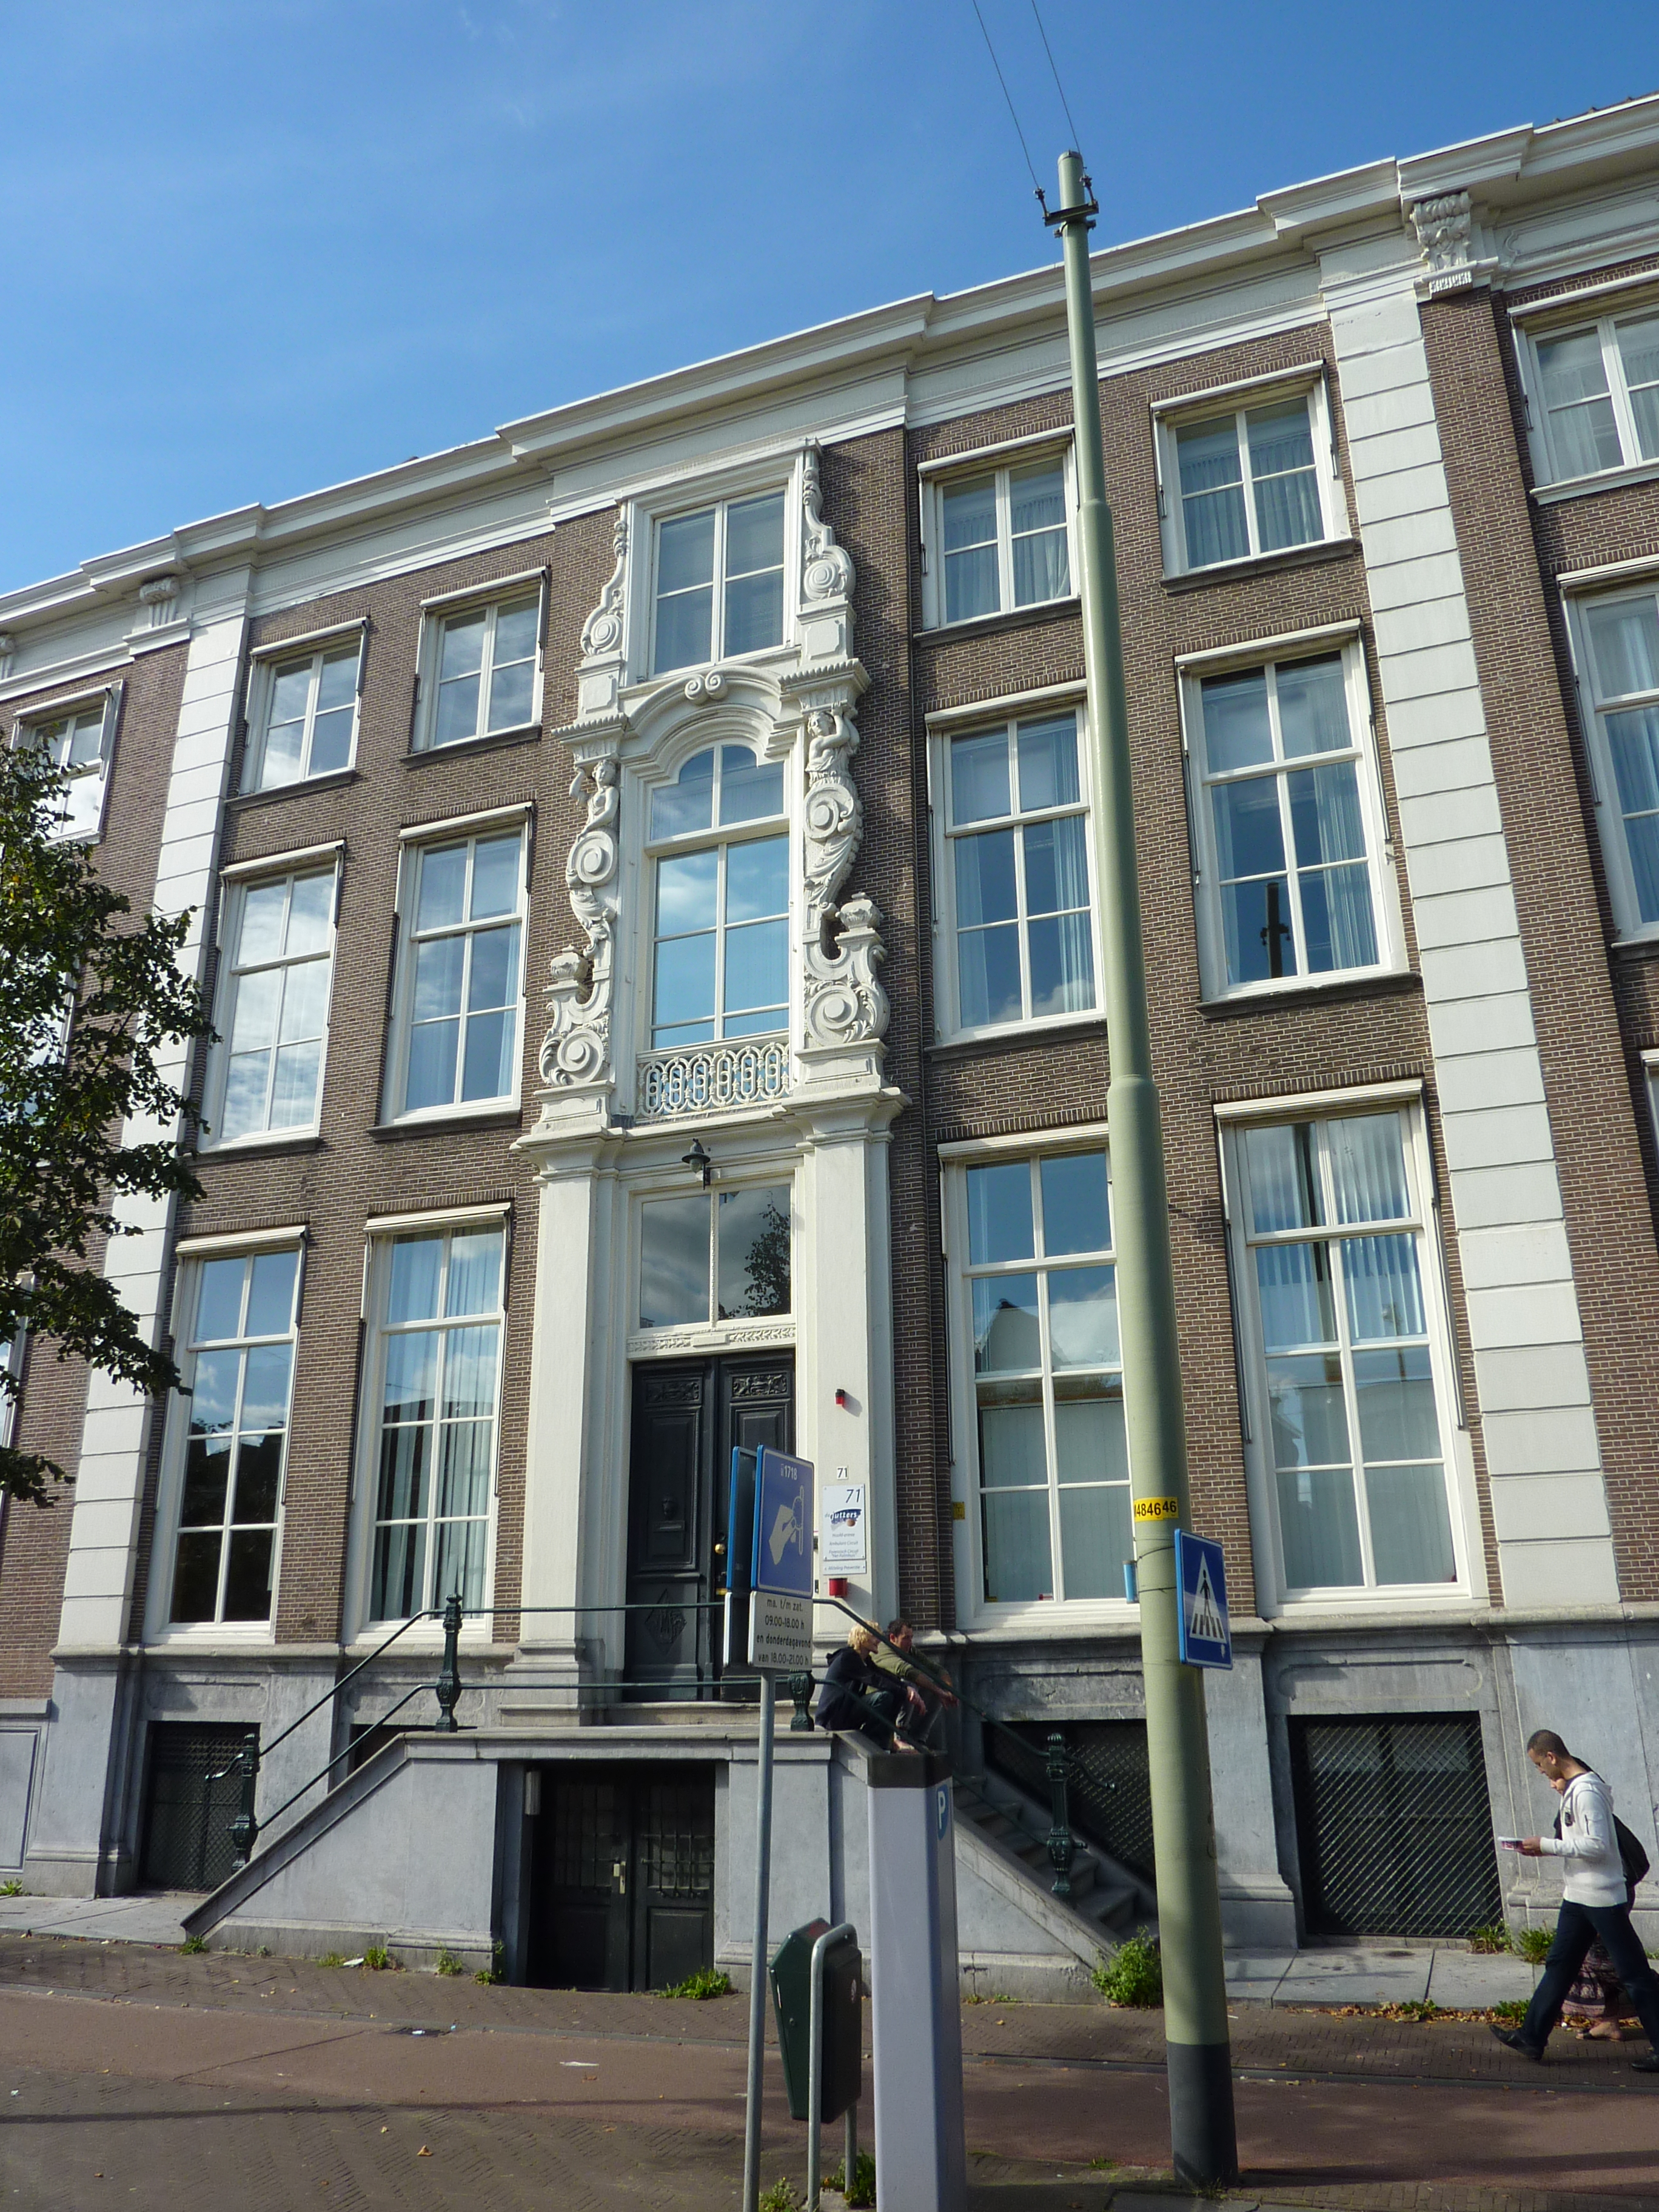 Постоянные арбитражные учреждения. Гаага суд. Hague здание суда. Постоянного арбитражного суда в Гааге. Школа в 1728 году.